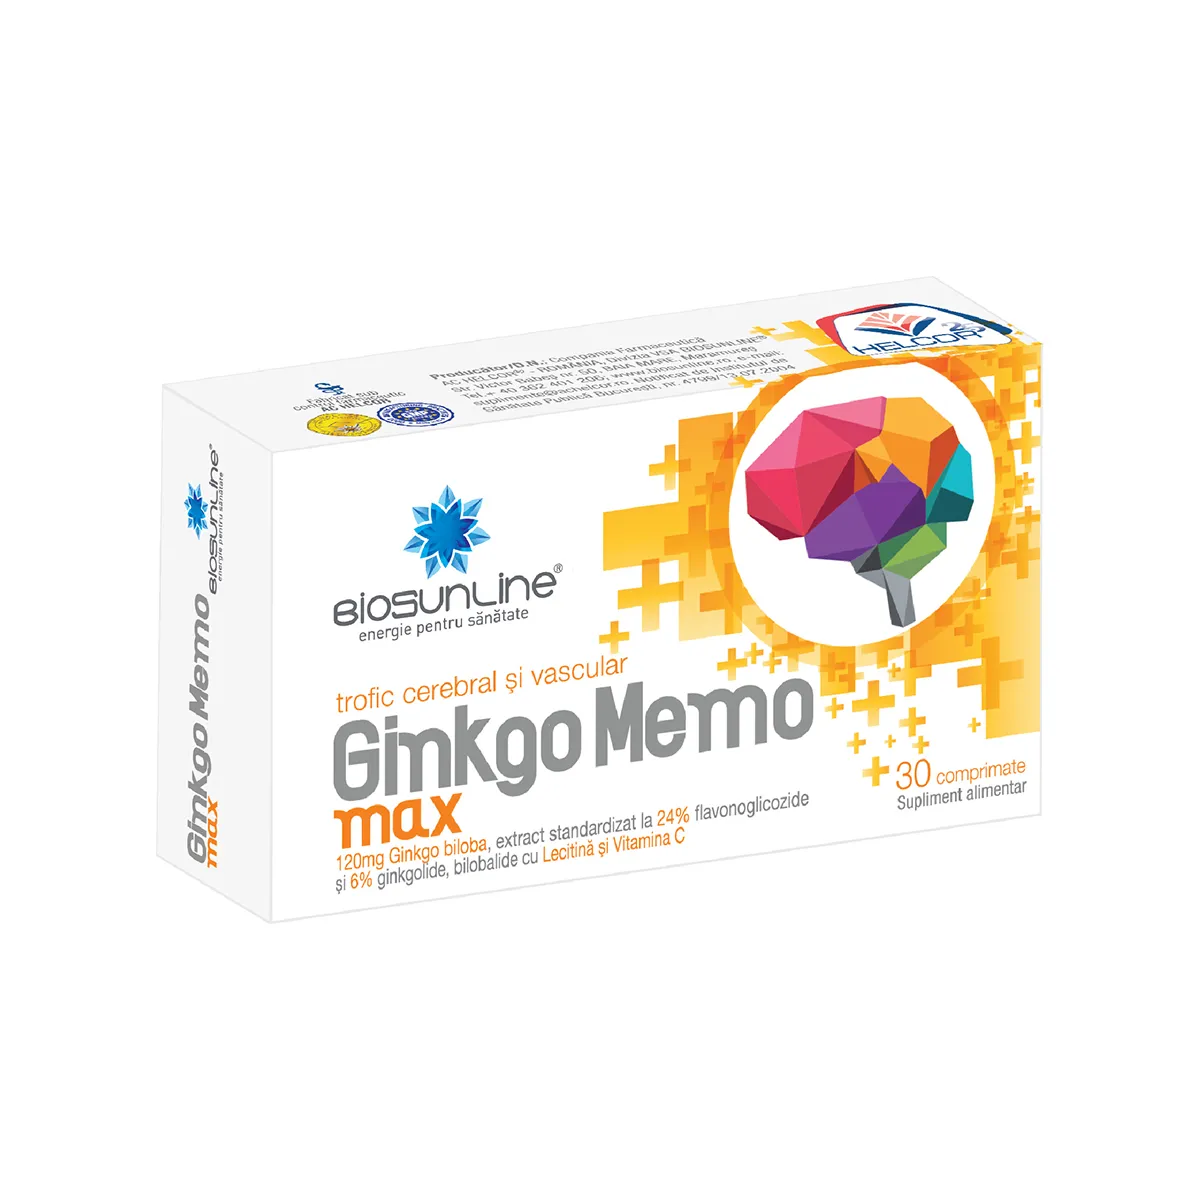 Ginkgo Memo Max, 30 comprimate, BioSunLine